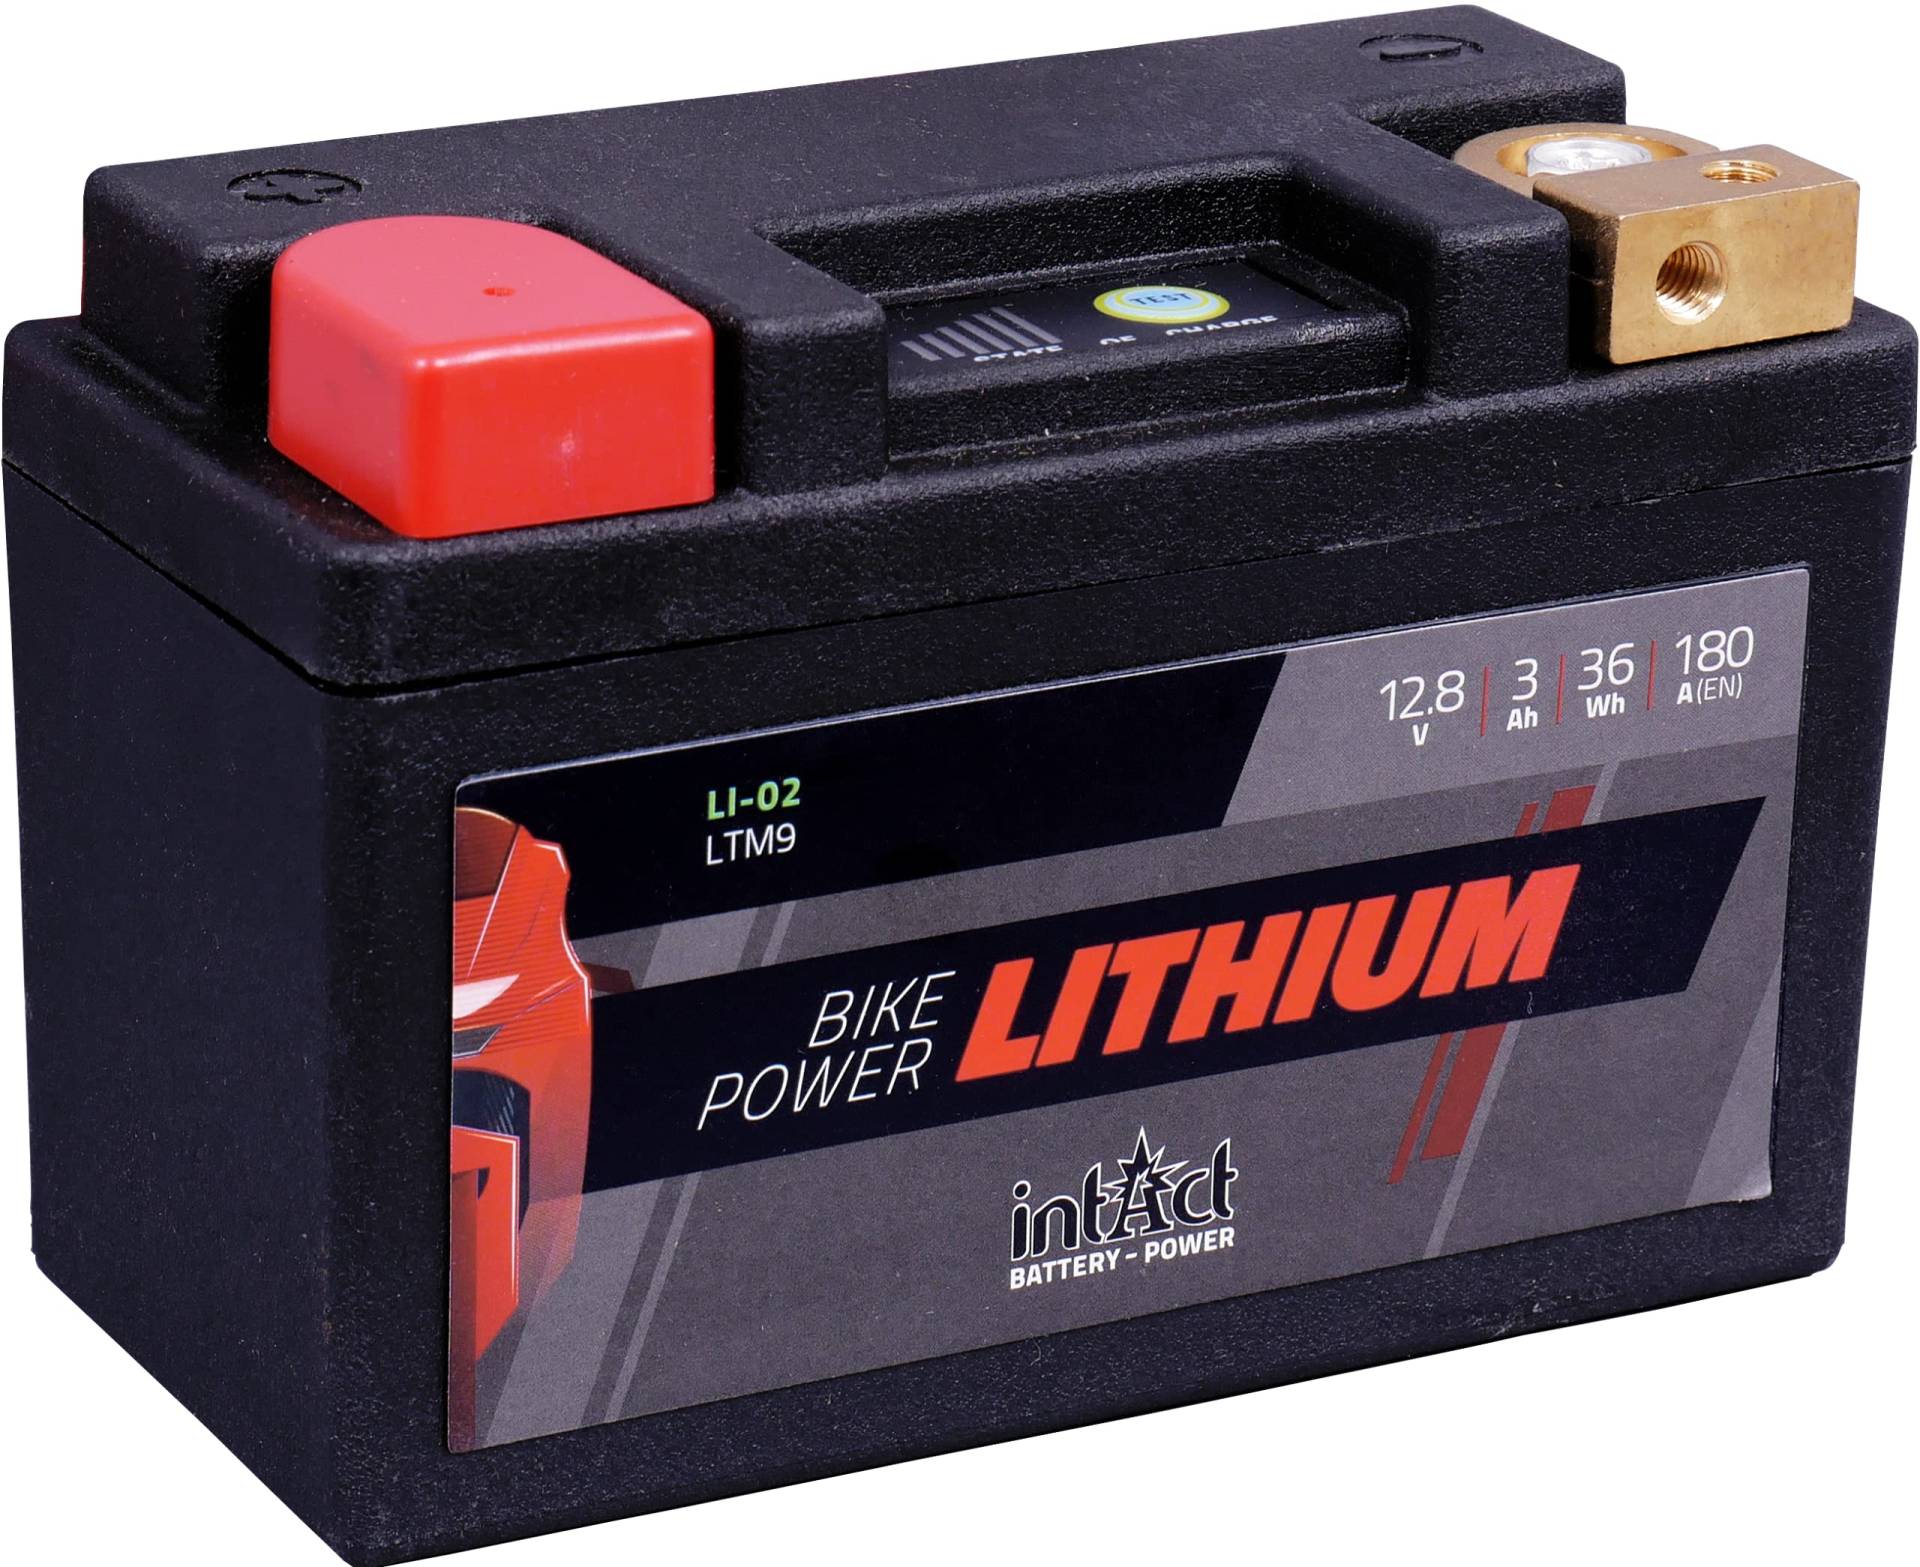 intAct - LITHIUM MOTORRADBATTERIE | Batterie für Roller, Motorrad, Quads uvm. Bis zu 75% Gewichtseinsparung | Bike-Power LI-02, LTM9, 12,8V Batterie, 3 AH (c10), 36 Wh, 180 A (CCA) | Maße: 134x65x92mm von Intact